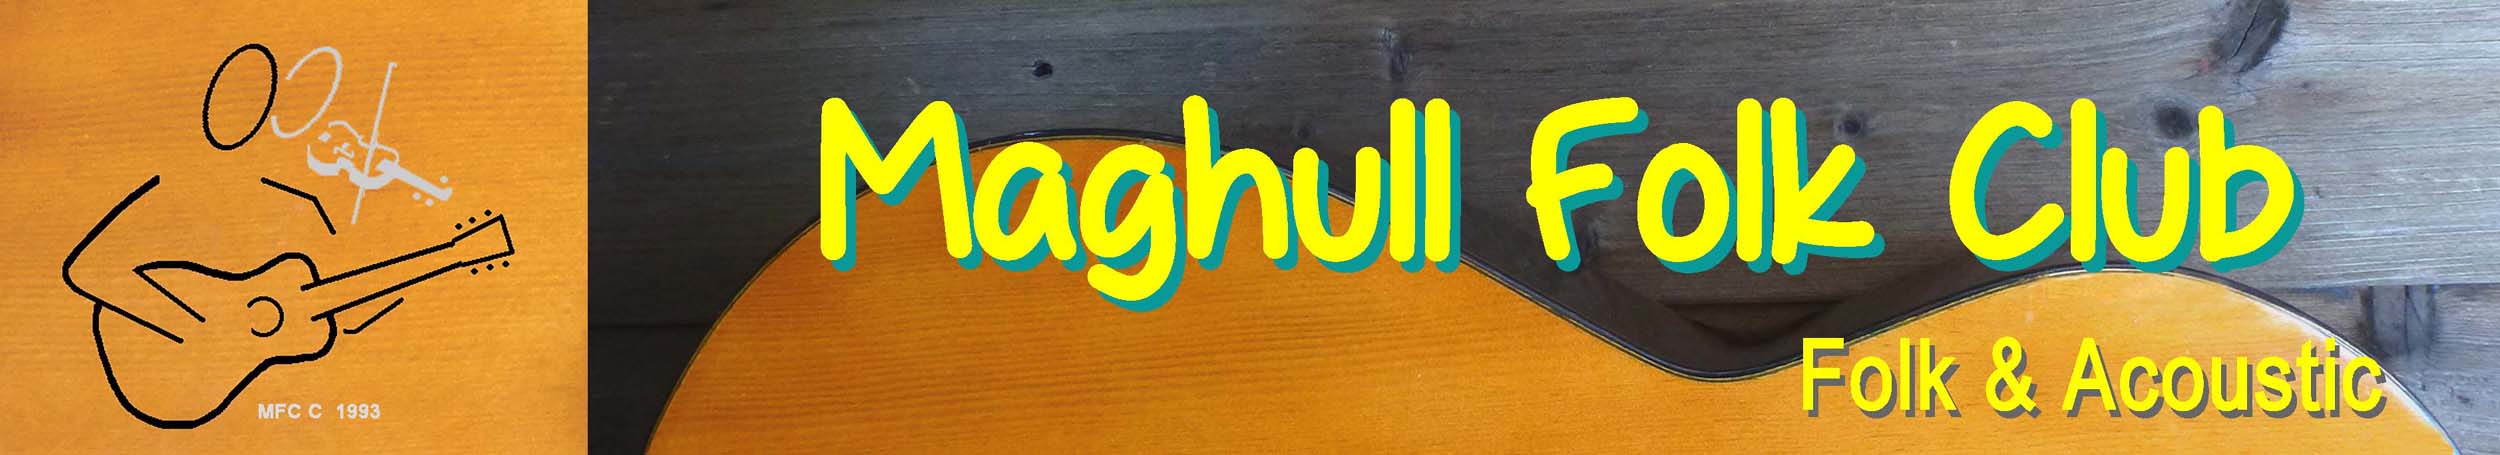 Maghull Folk Club & Acoustic